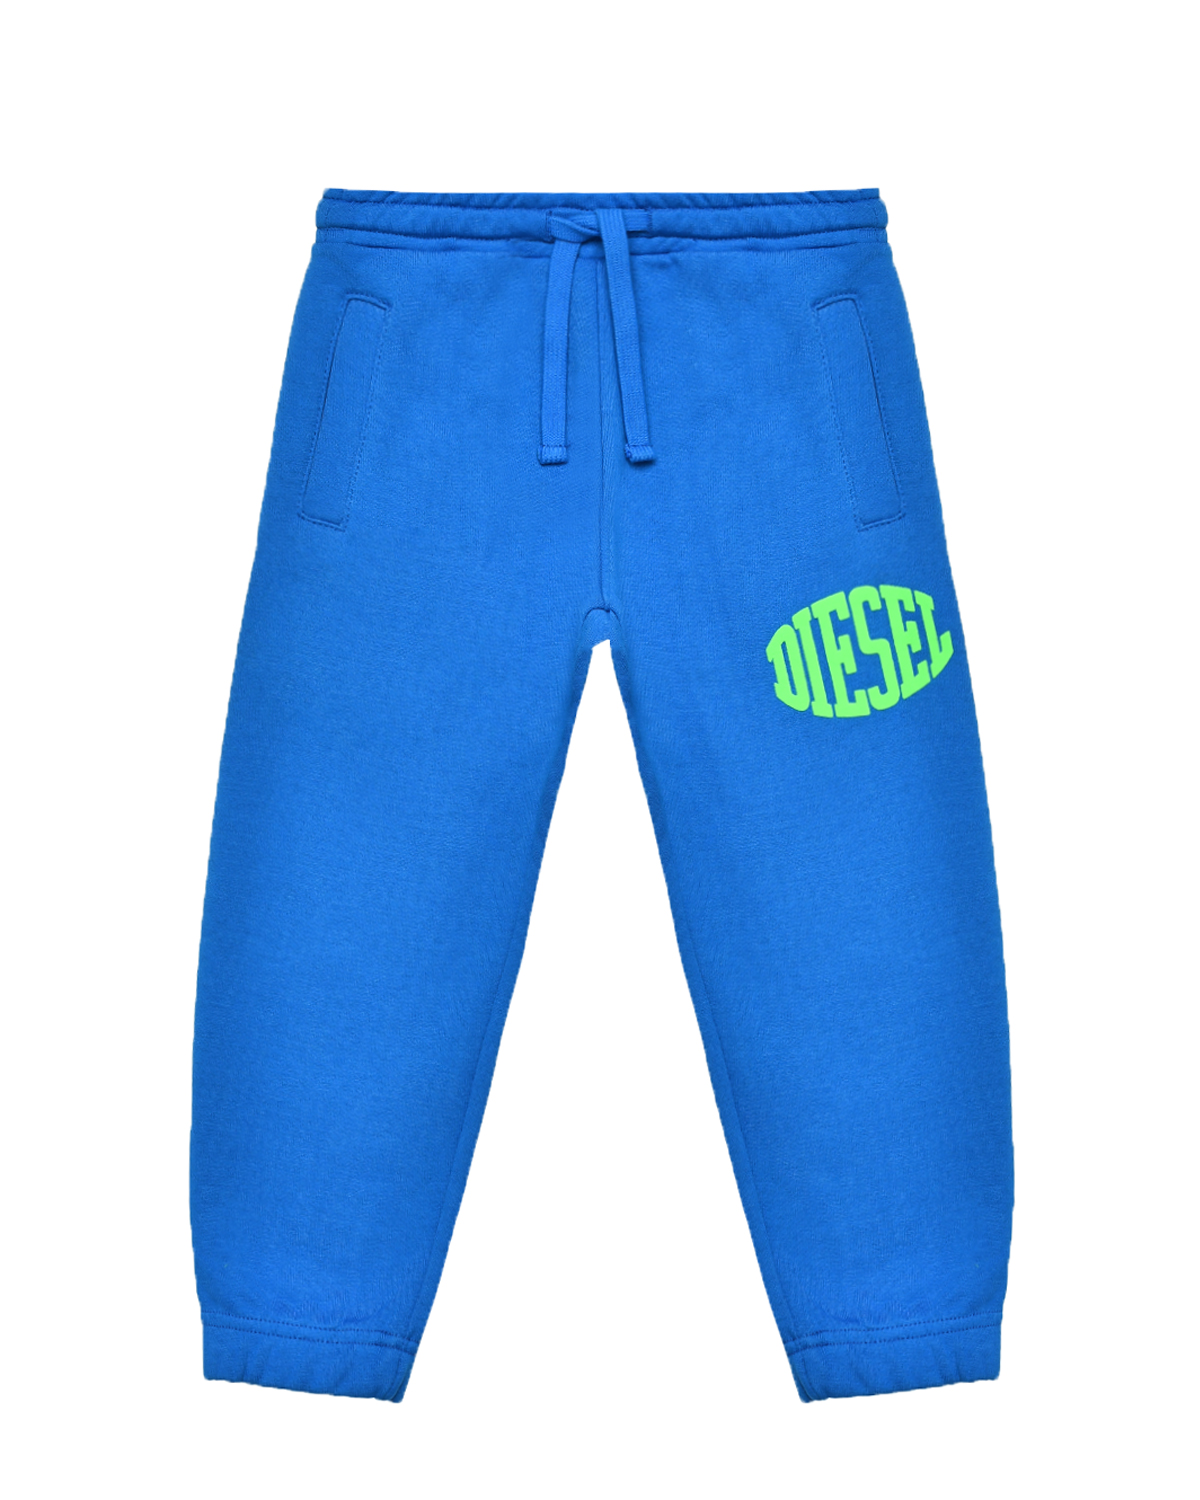 Спортивные брюки с поясом на резинке Diesel, размер 152, цвет синий